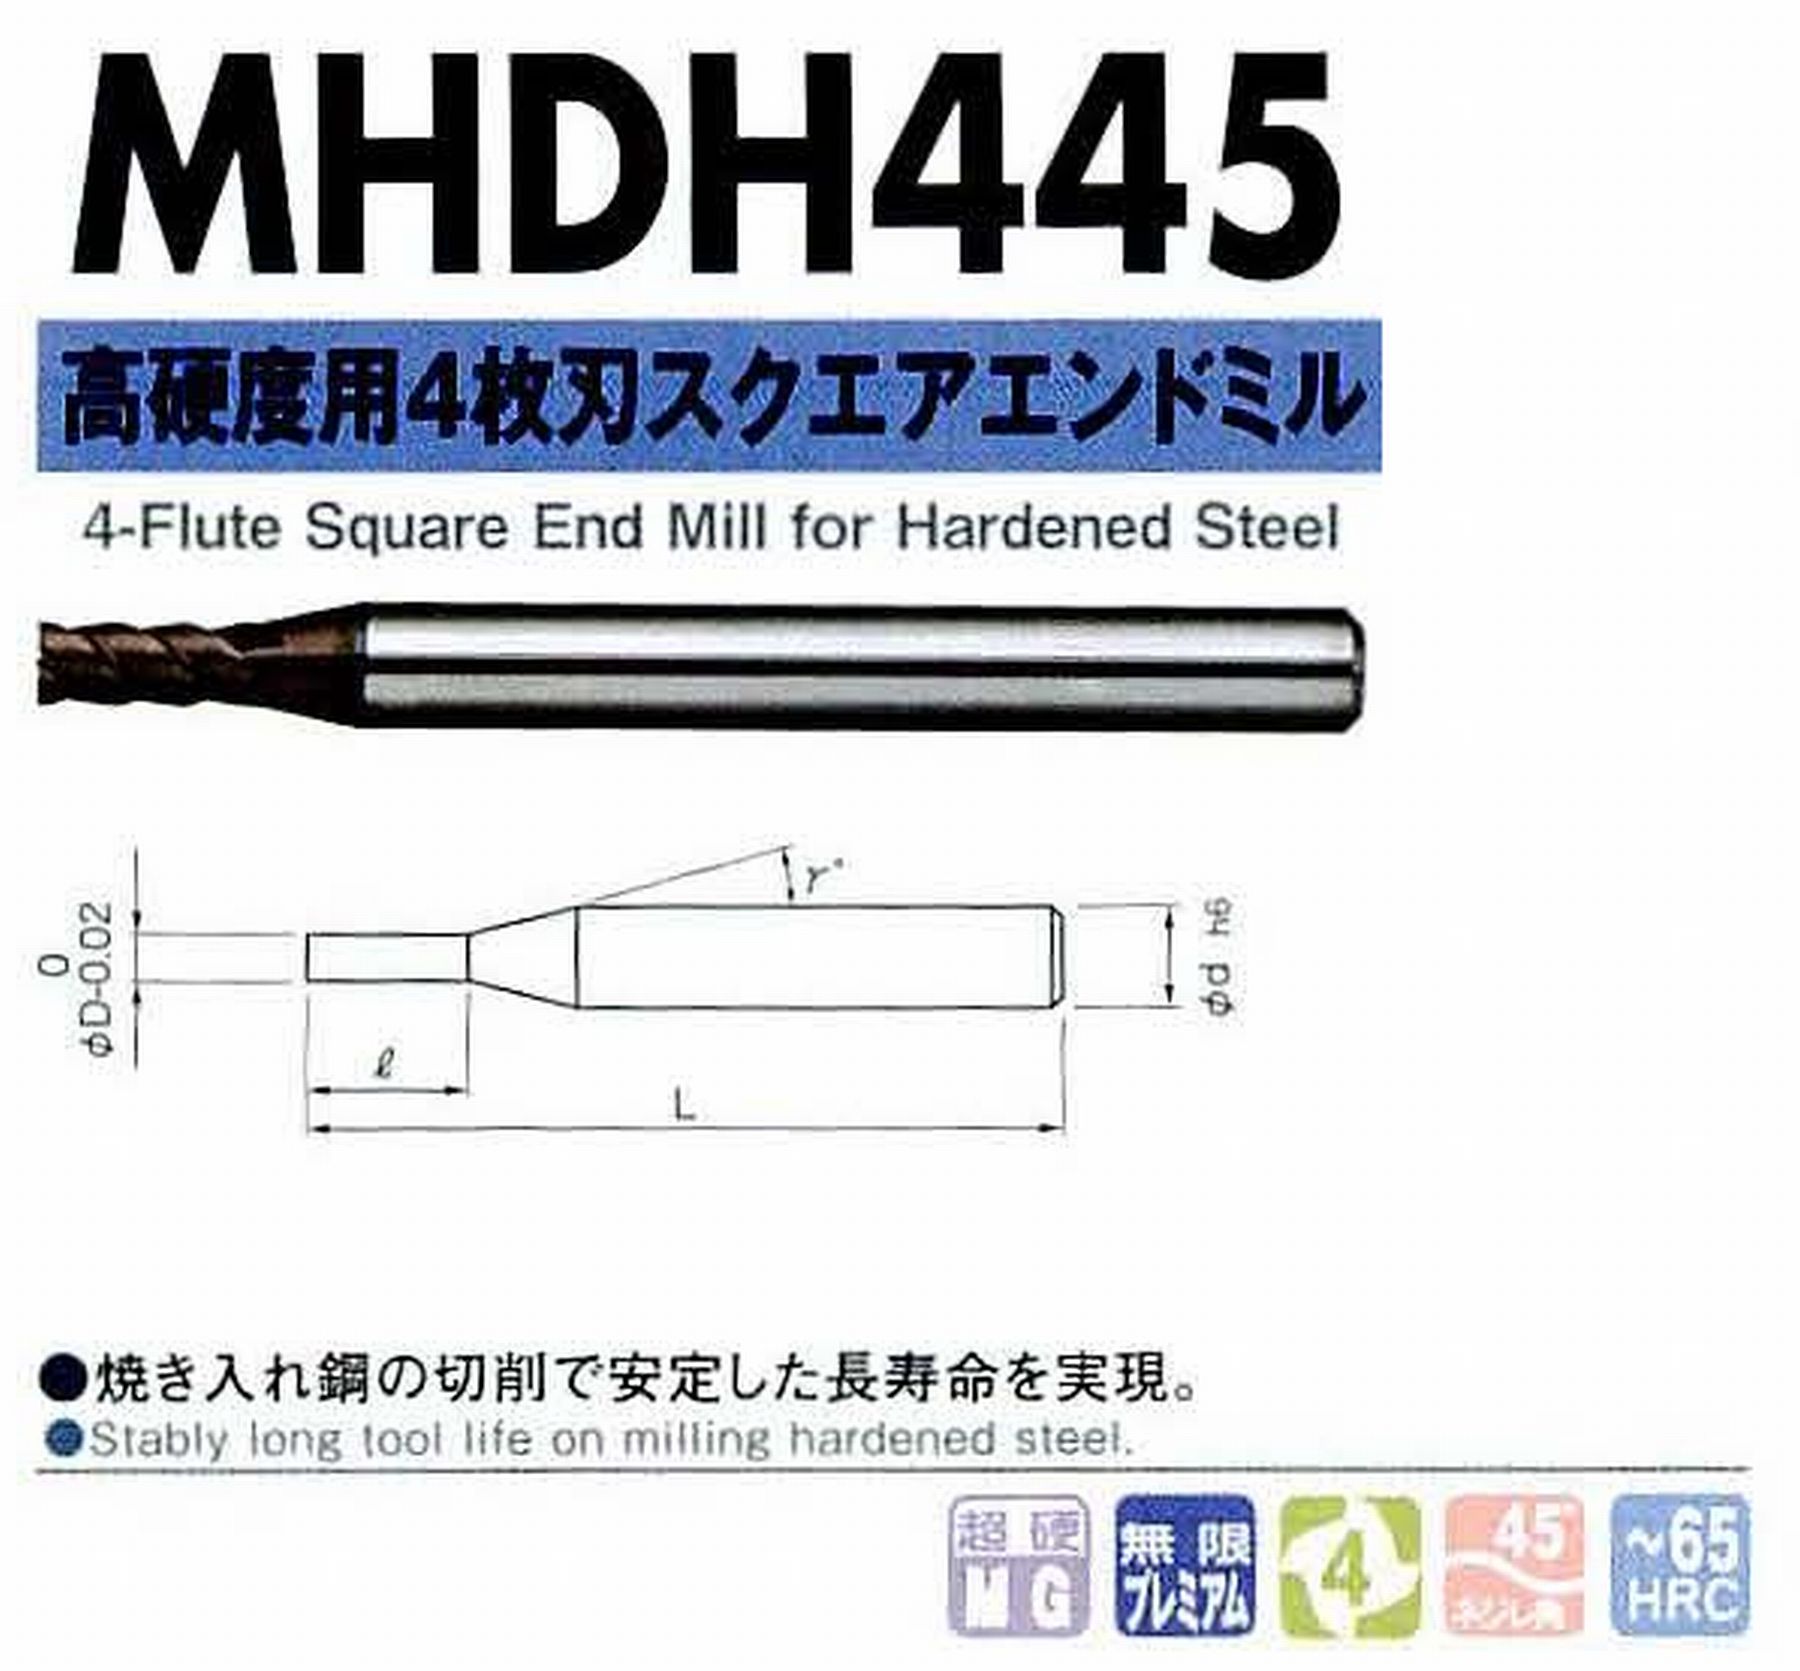 NS 日進工具 MHDH445 高硬度用4枚刃スクエアエンドミル コードNO．08-00427-00300 刃径3 刃長6 首角12° シャンク径6mm 全長60